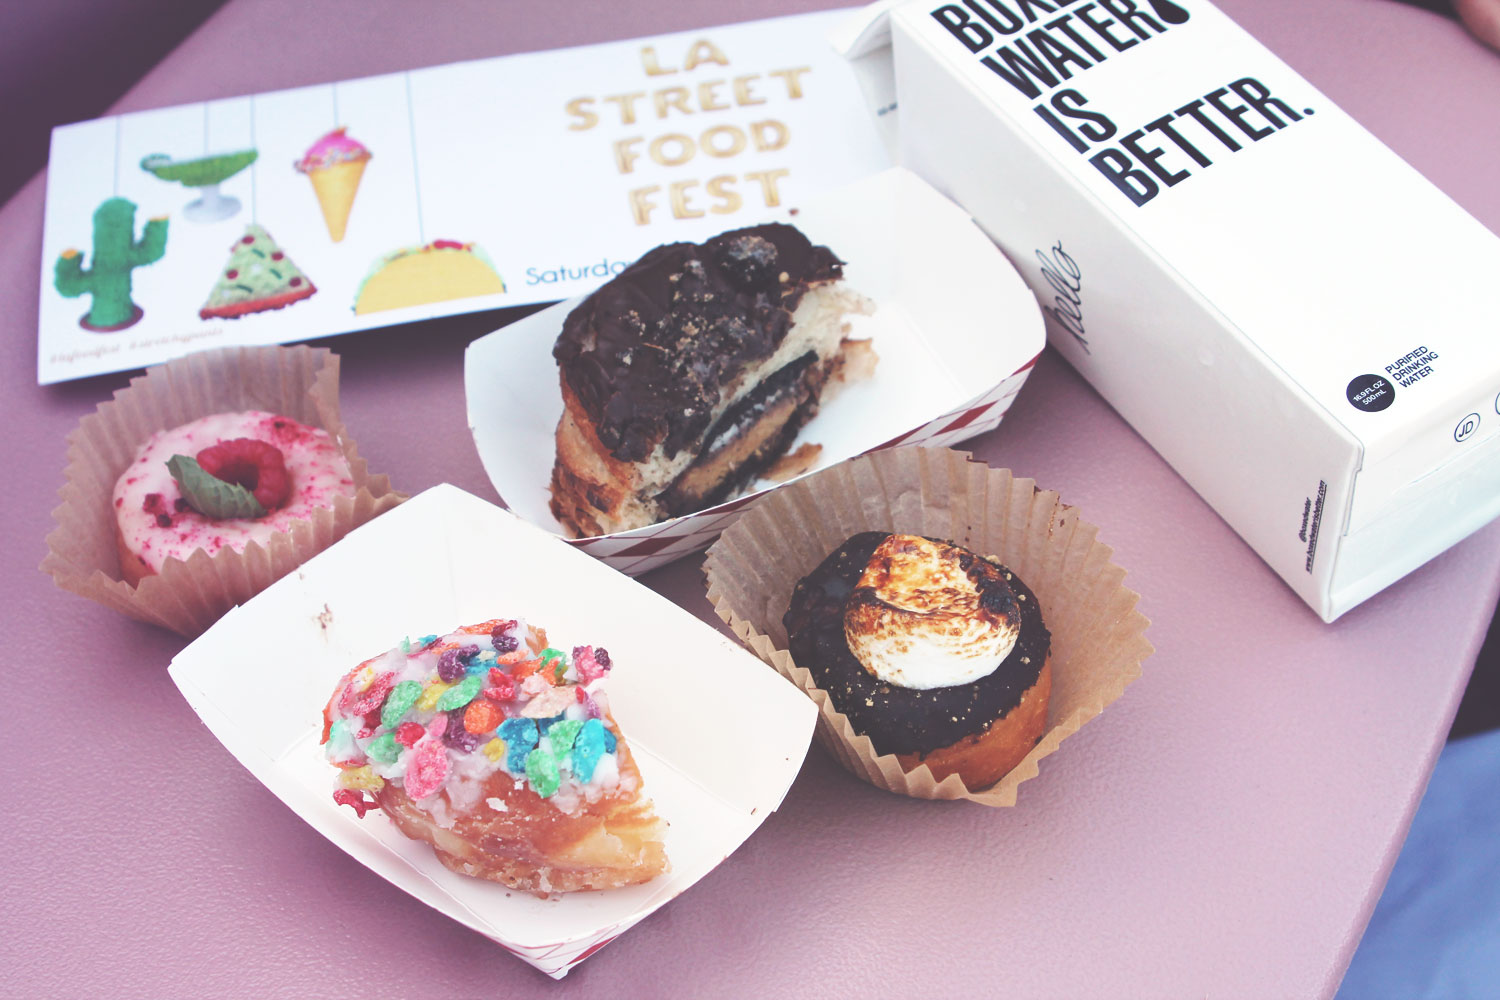 LA_Street_Food_Fest_Donuts_1